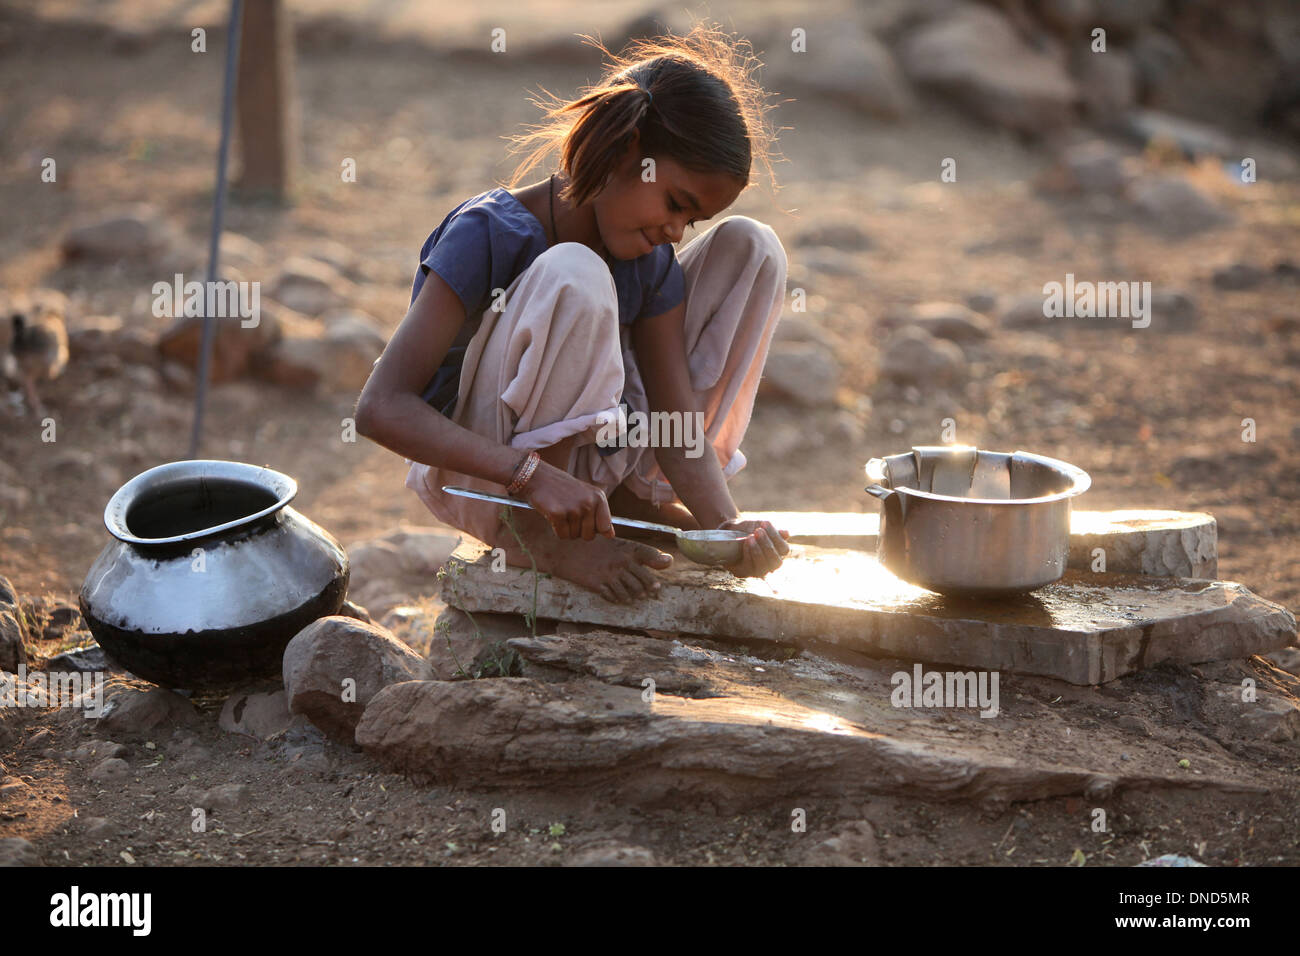 Bhil girl cleaning utencils, Bhil tribe, Madhya Pradesh, India Stock Photo